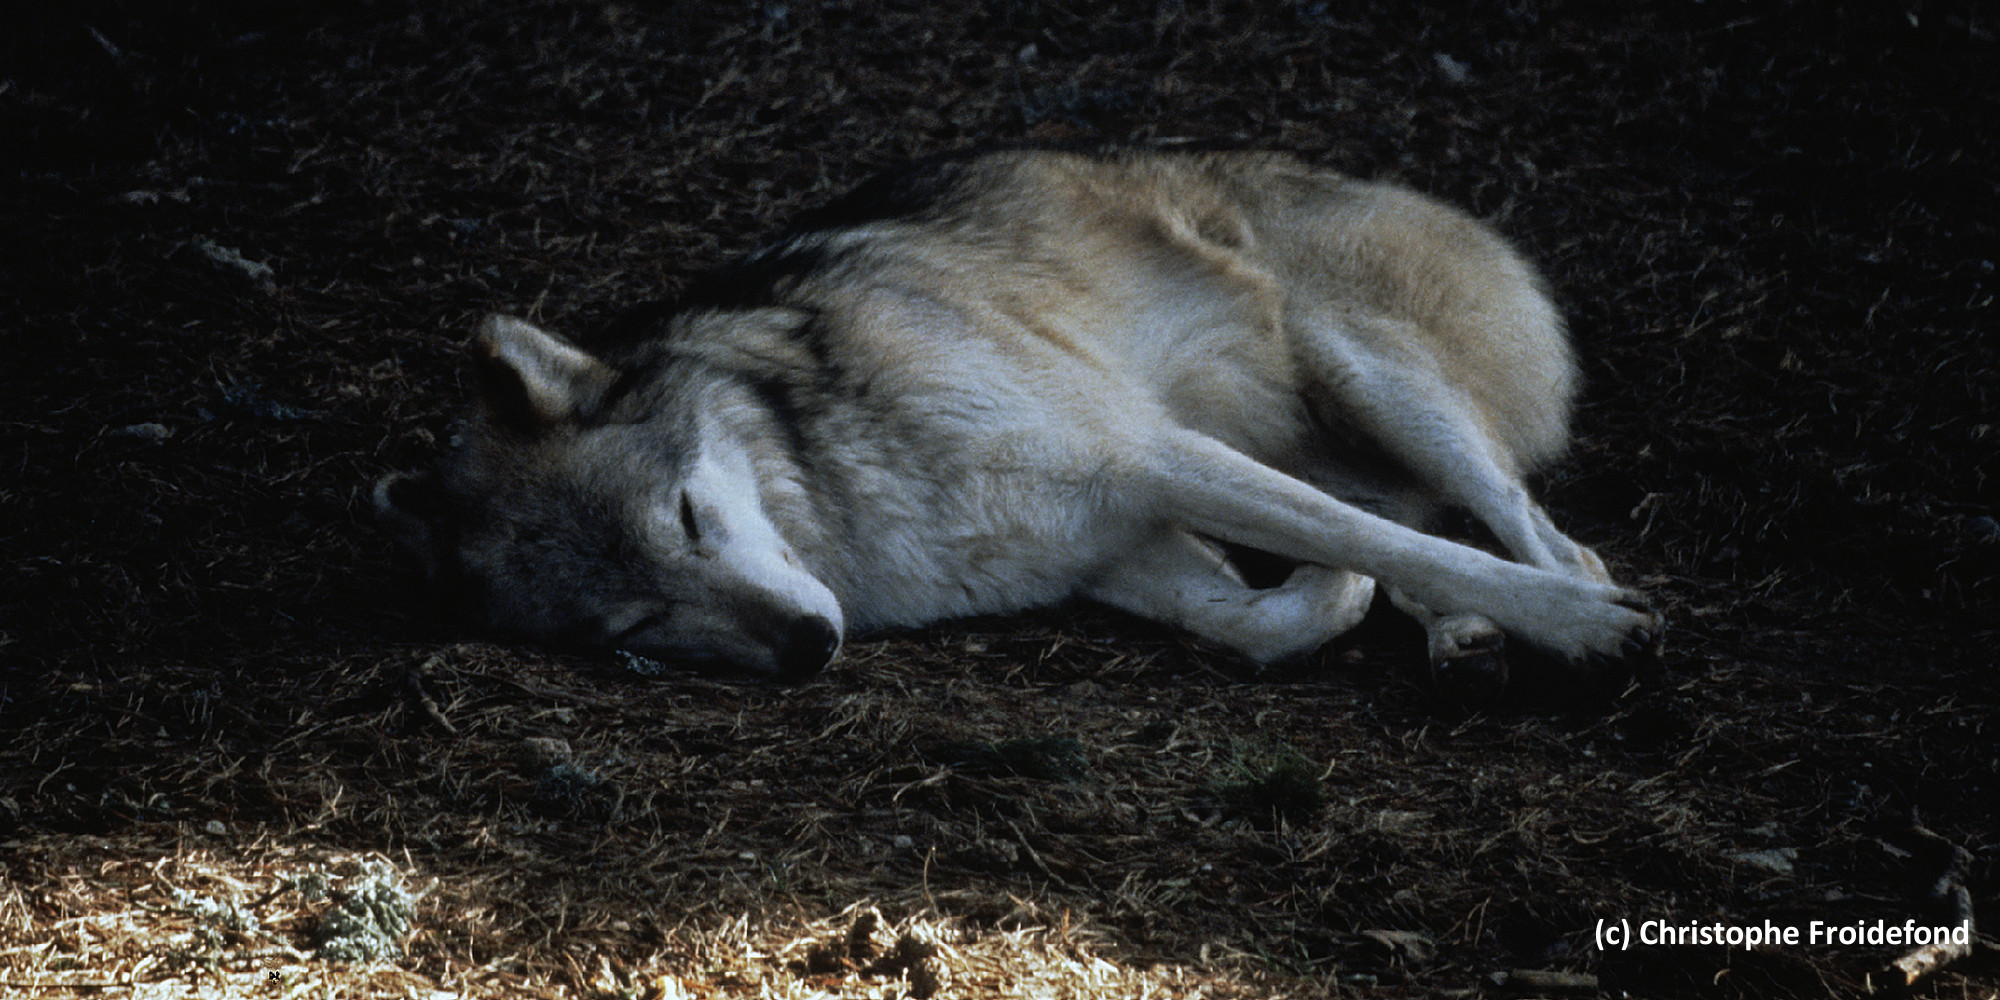 Premier loup tué dans le cadre du nouvel arrêté | France Nature Environnement